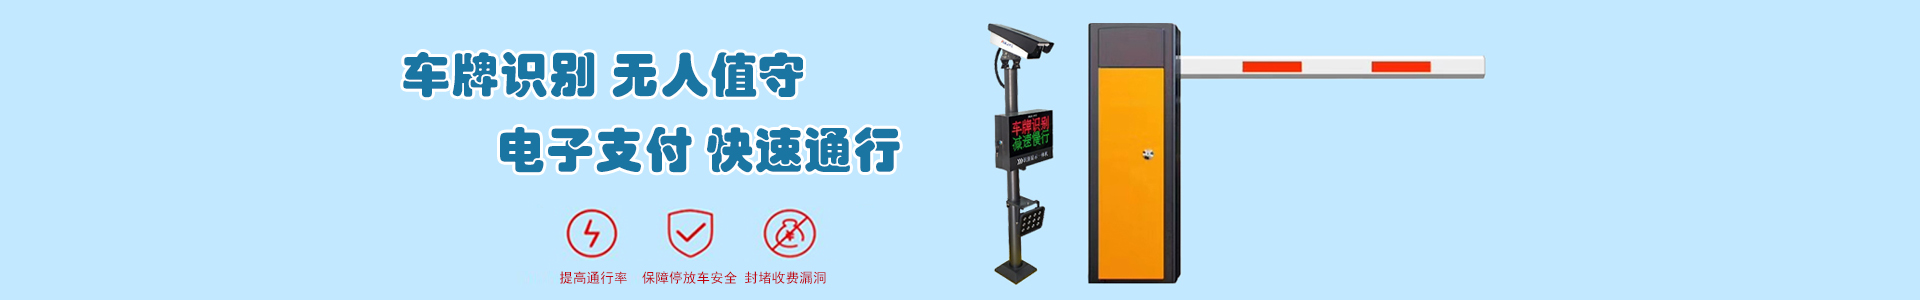 监控8-监控系统-上海帆蓝智能科技有限公司-车辆车牌识别|监控摄像头|道闸|小区门禁|人脸识别|伸缩门|